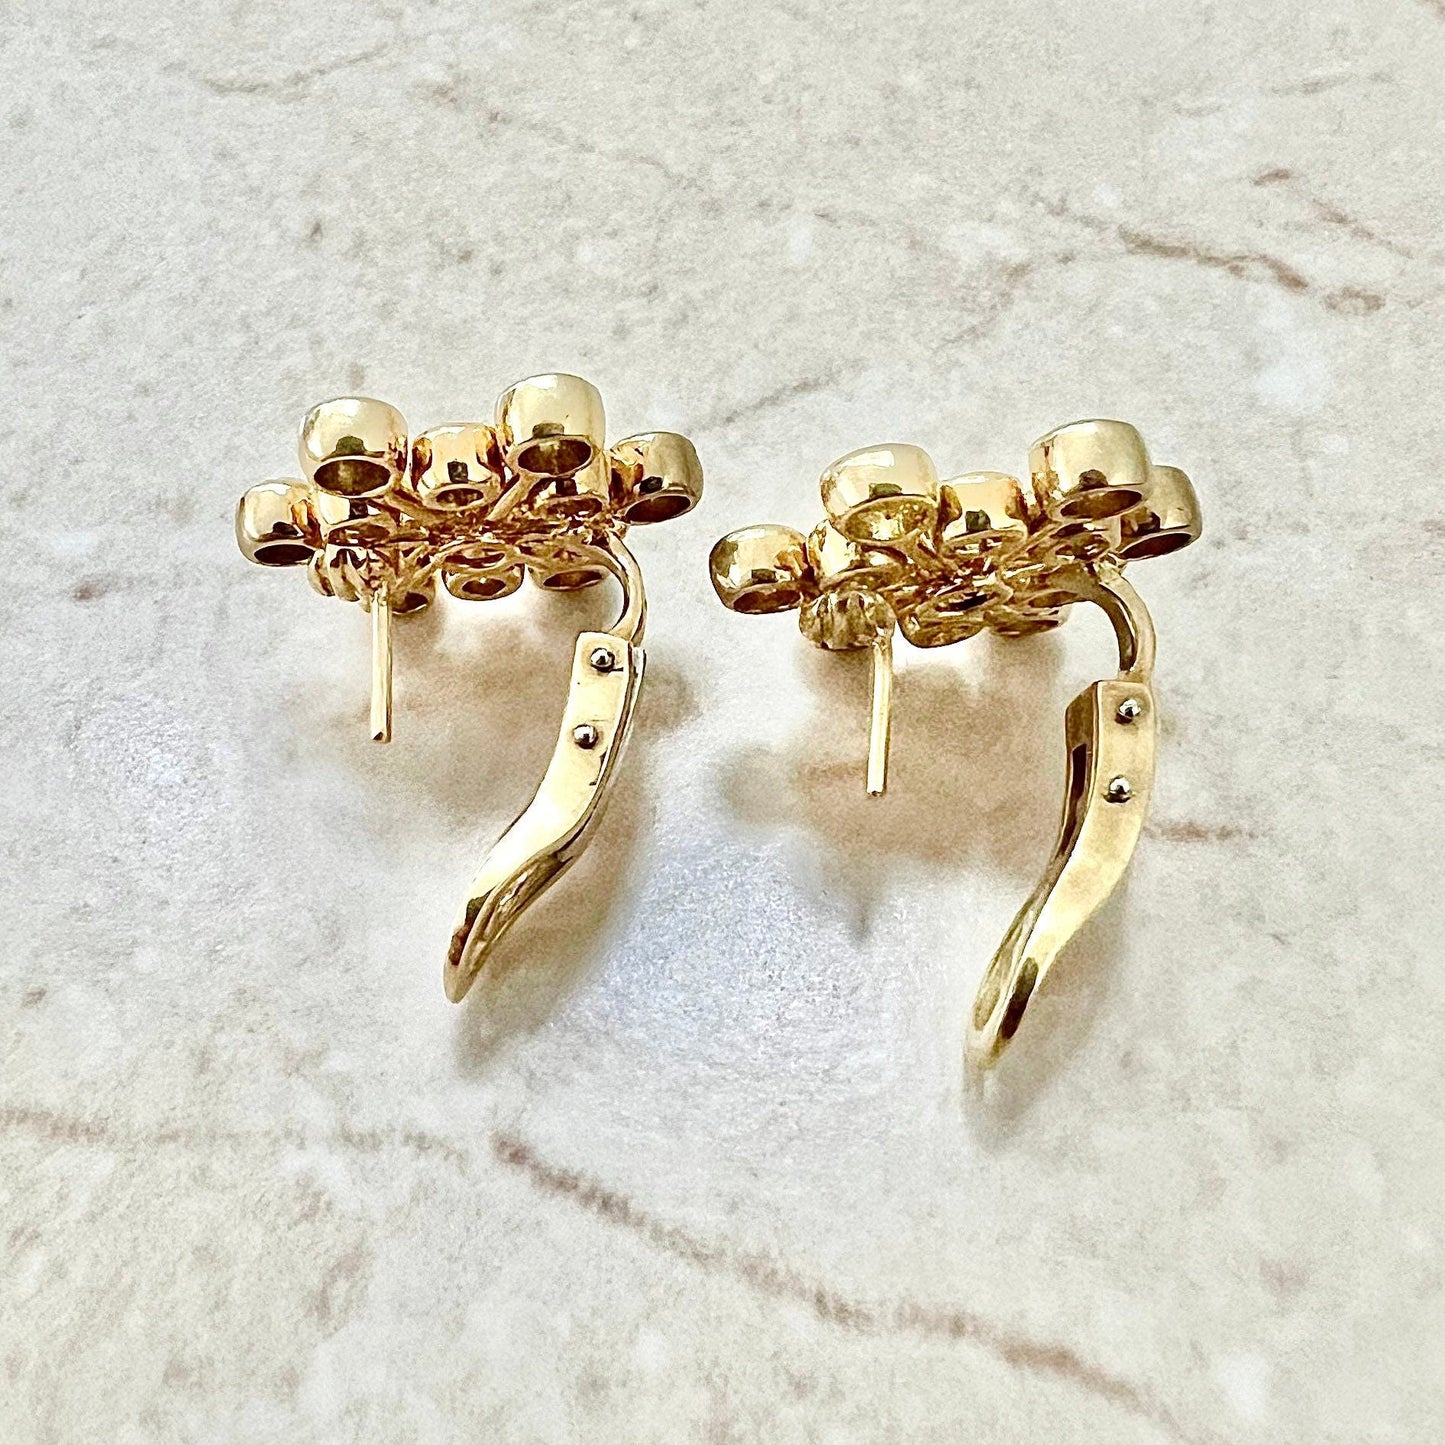 Fine 18K Yellow Diamond Snowflake Earrings By Carvin French - Yellow Gold Diamond Earrings - Diamond Cluster Earrings - Handcrafted Earrings